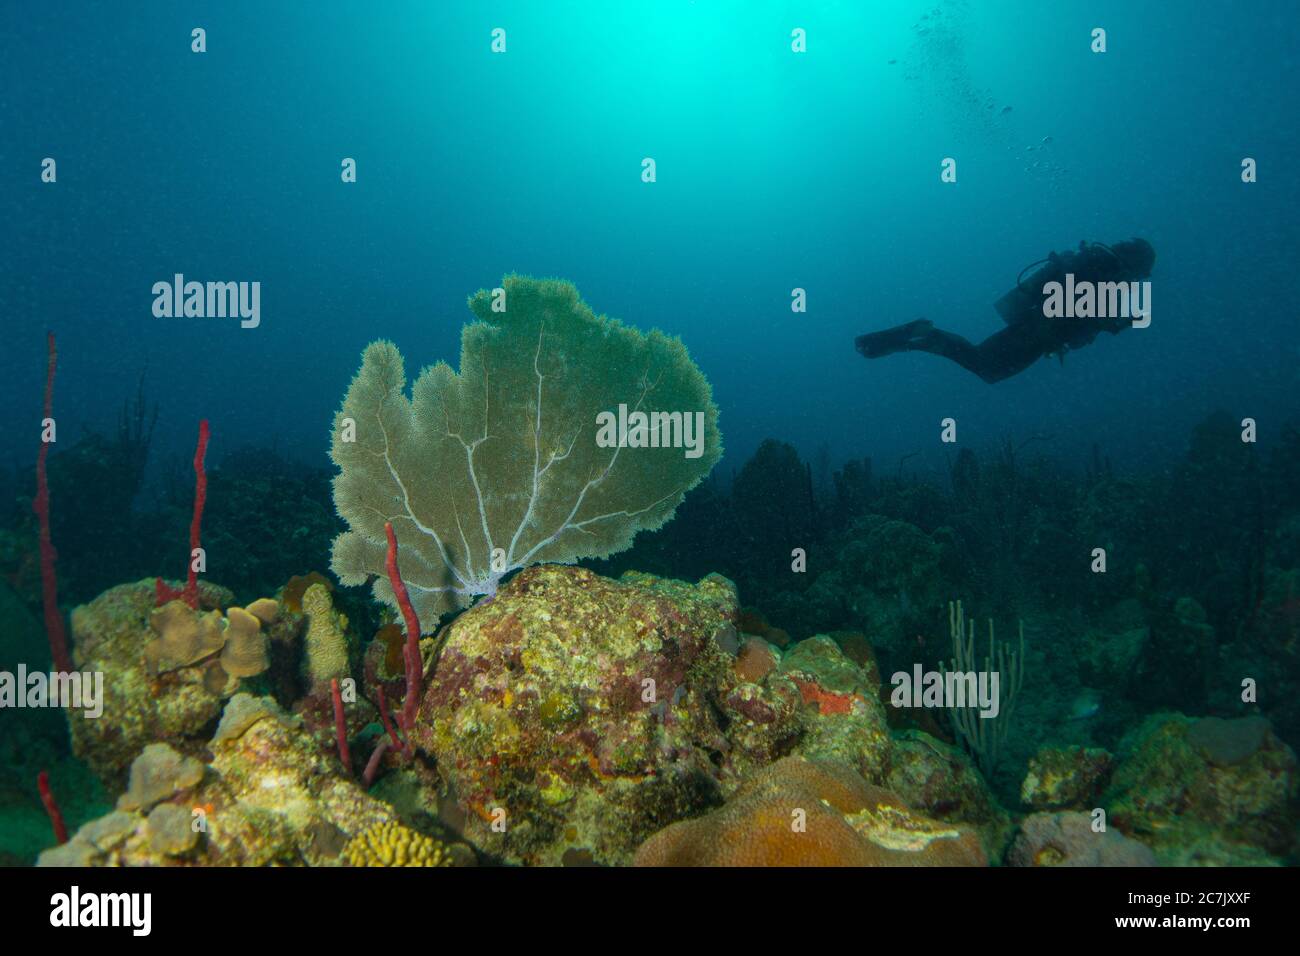 Coraux colorés, éponges et ventilateurs de mer dans la mer des caraïbes avec plongée sous-marine dans le soleil rétroéclairage dans l'océan bleu Banque D'Images